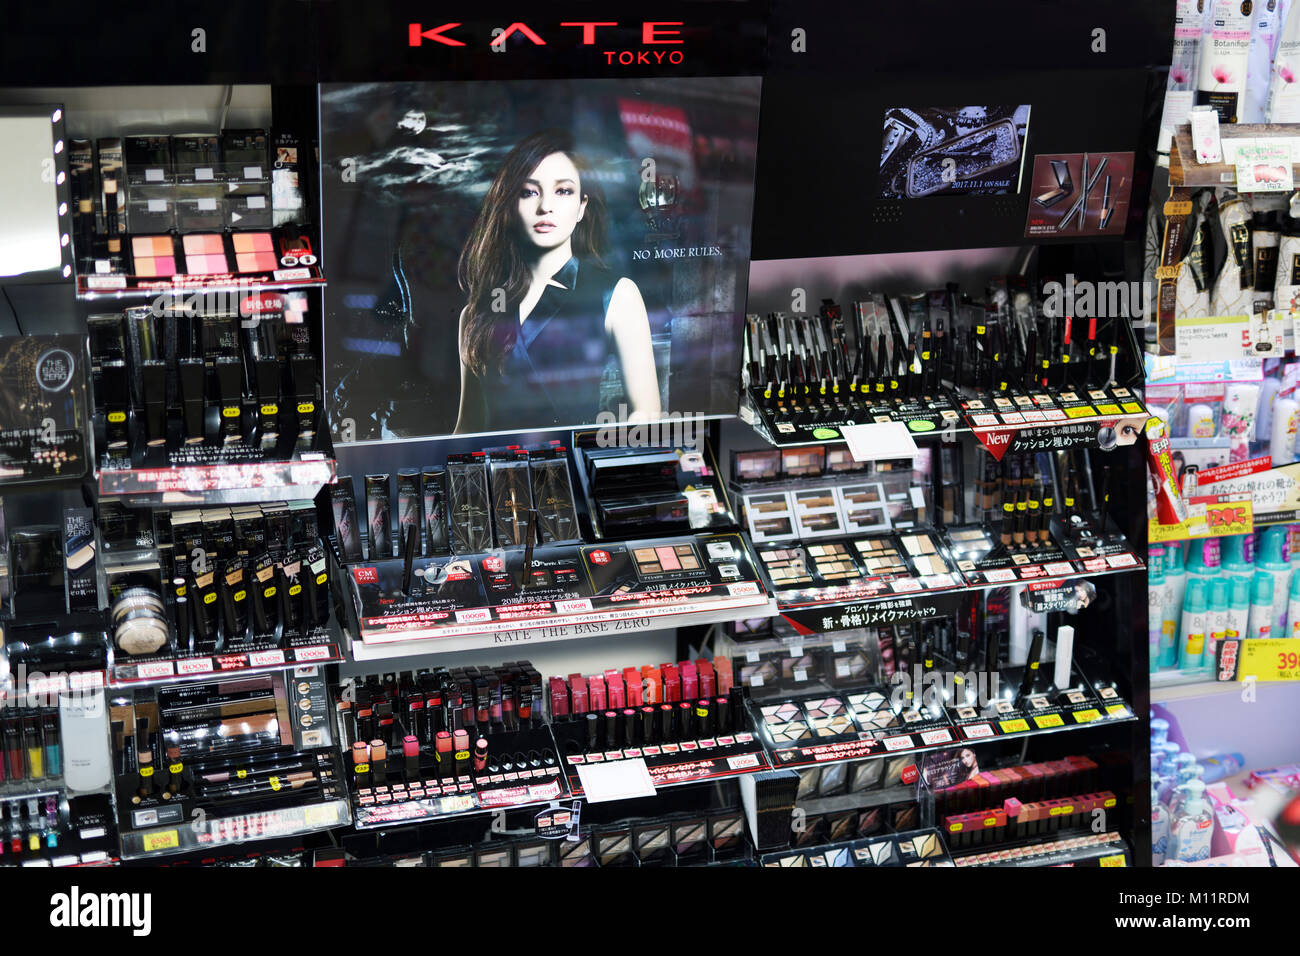 KATE Tokyo, maquillage, produits cosmétiques de la marque japonaise store  display à Kyoto, Japon, 2017 Photo Stock - Alamy